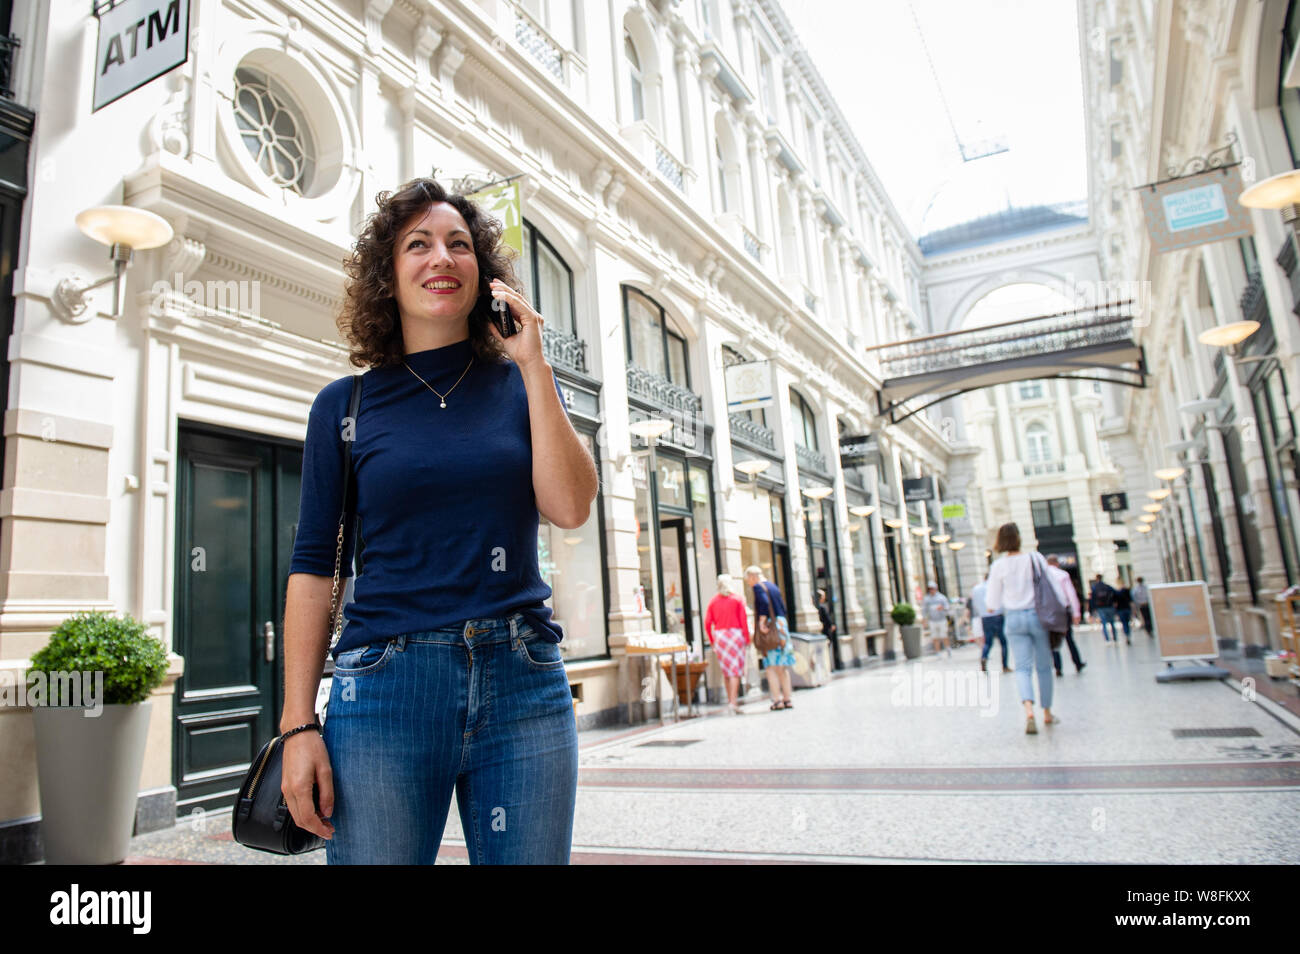 Den Haag. Passage. Een jonge vrouw aan het bellen met haar mobiel.  Foto: Gerrit de Heus. The Netherlands. A young woman talking on her mobile phone. Stock Photo